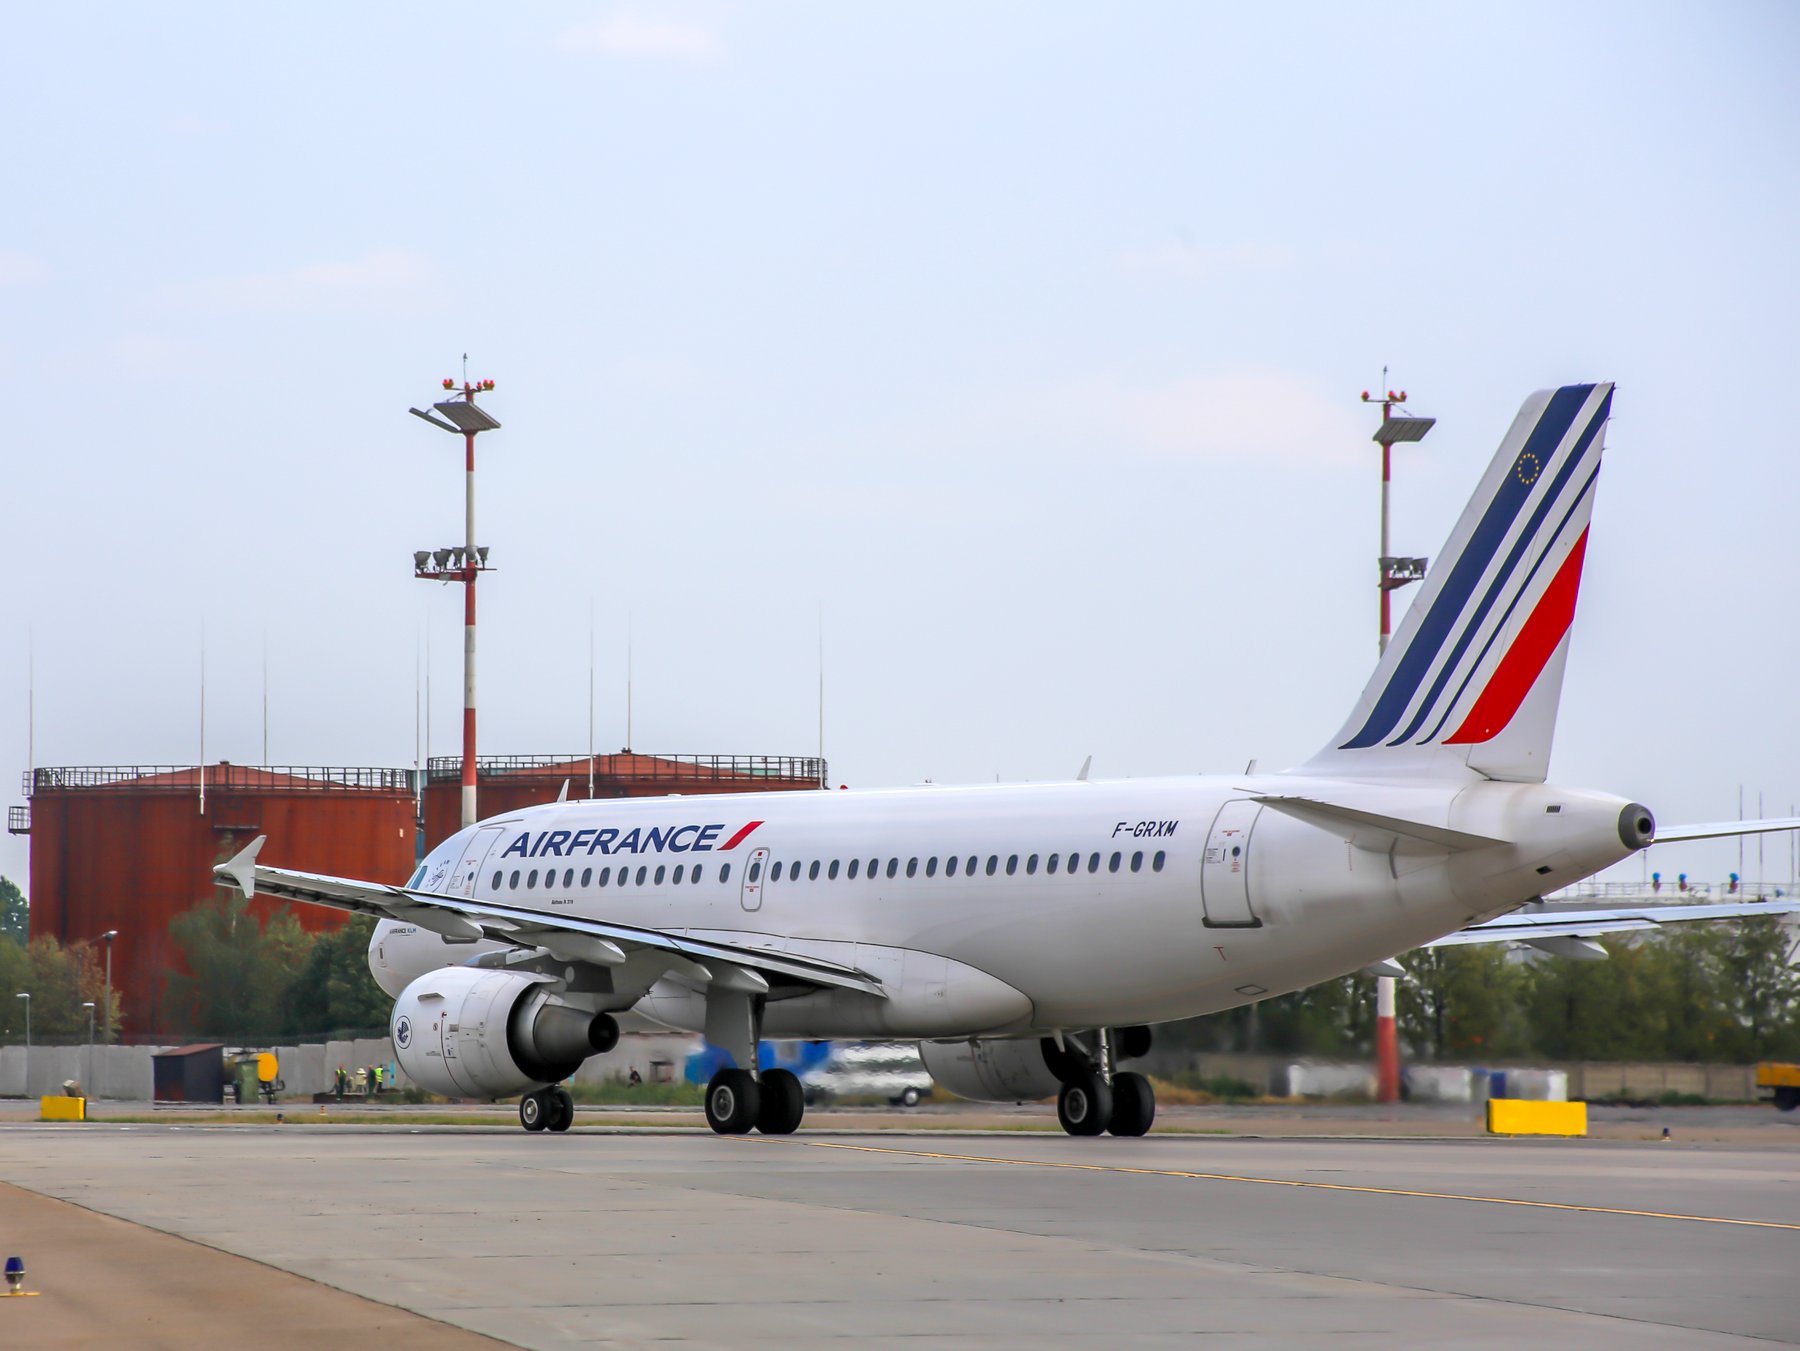 Air France усилила меры безопасности после терактов в Париже